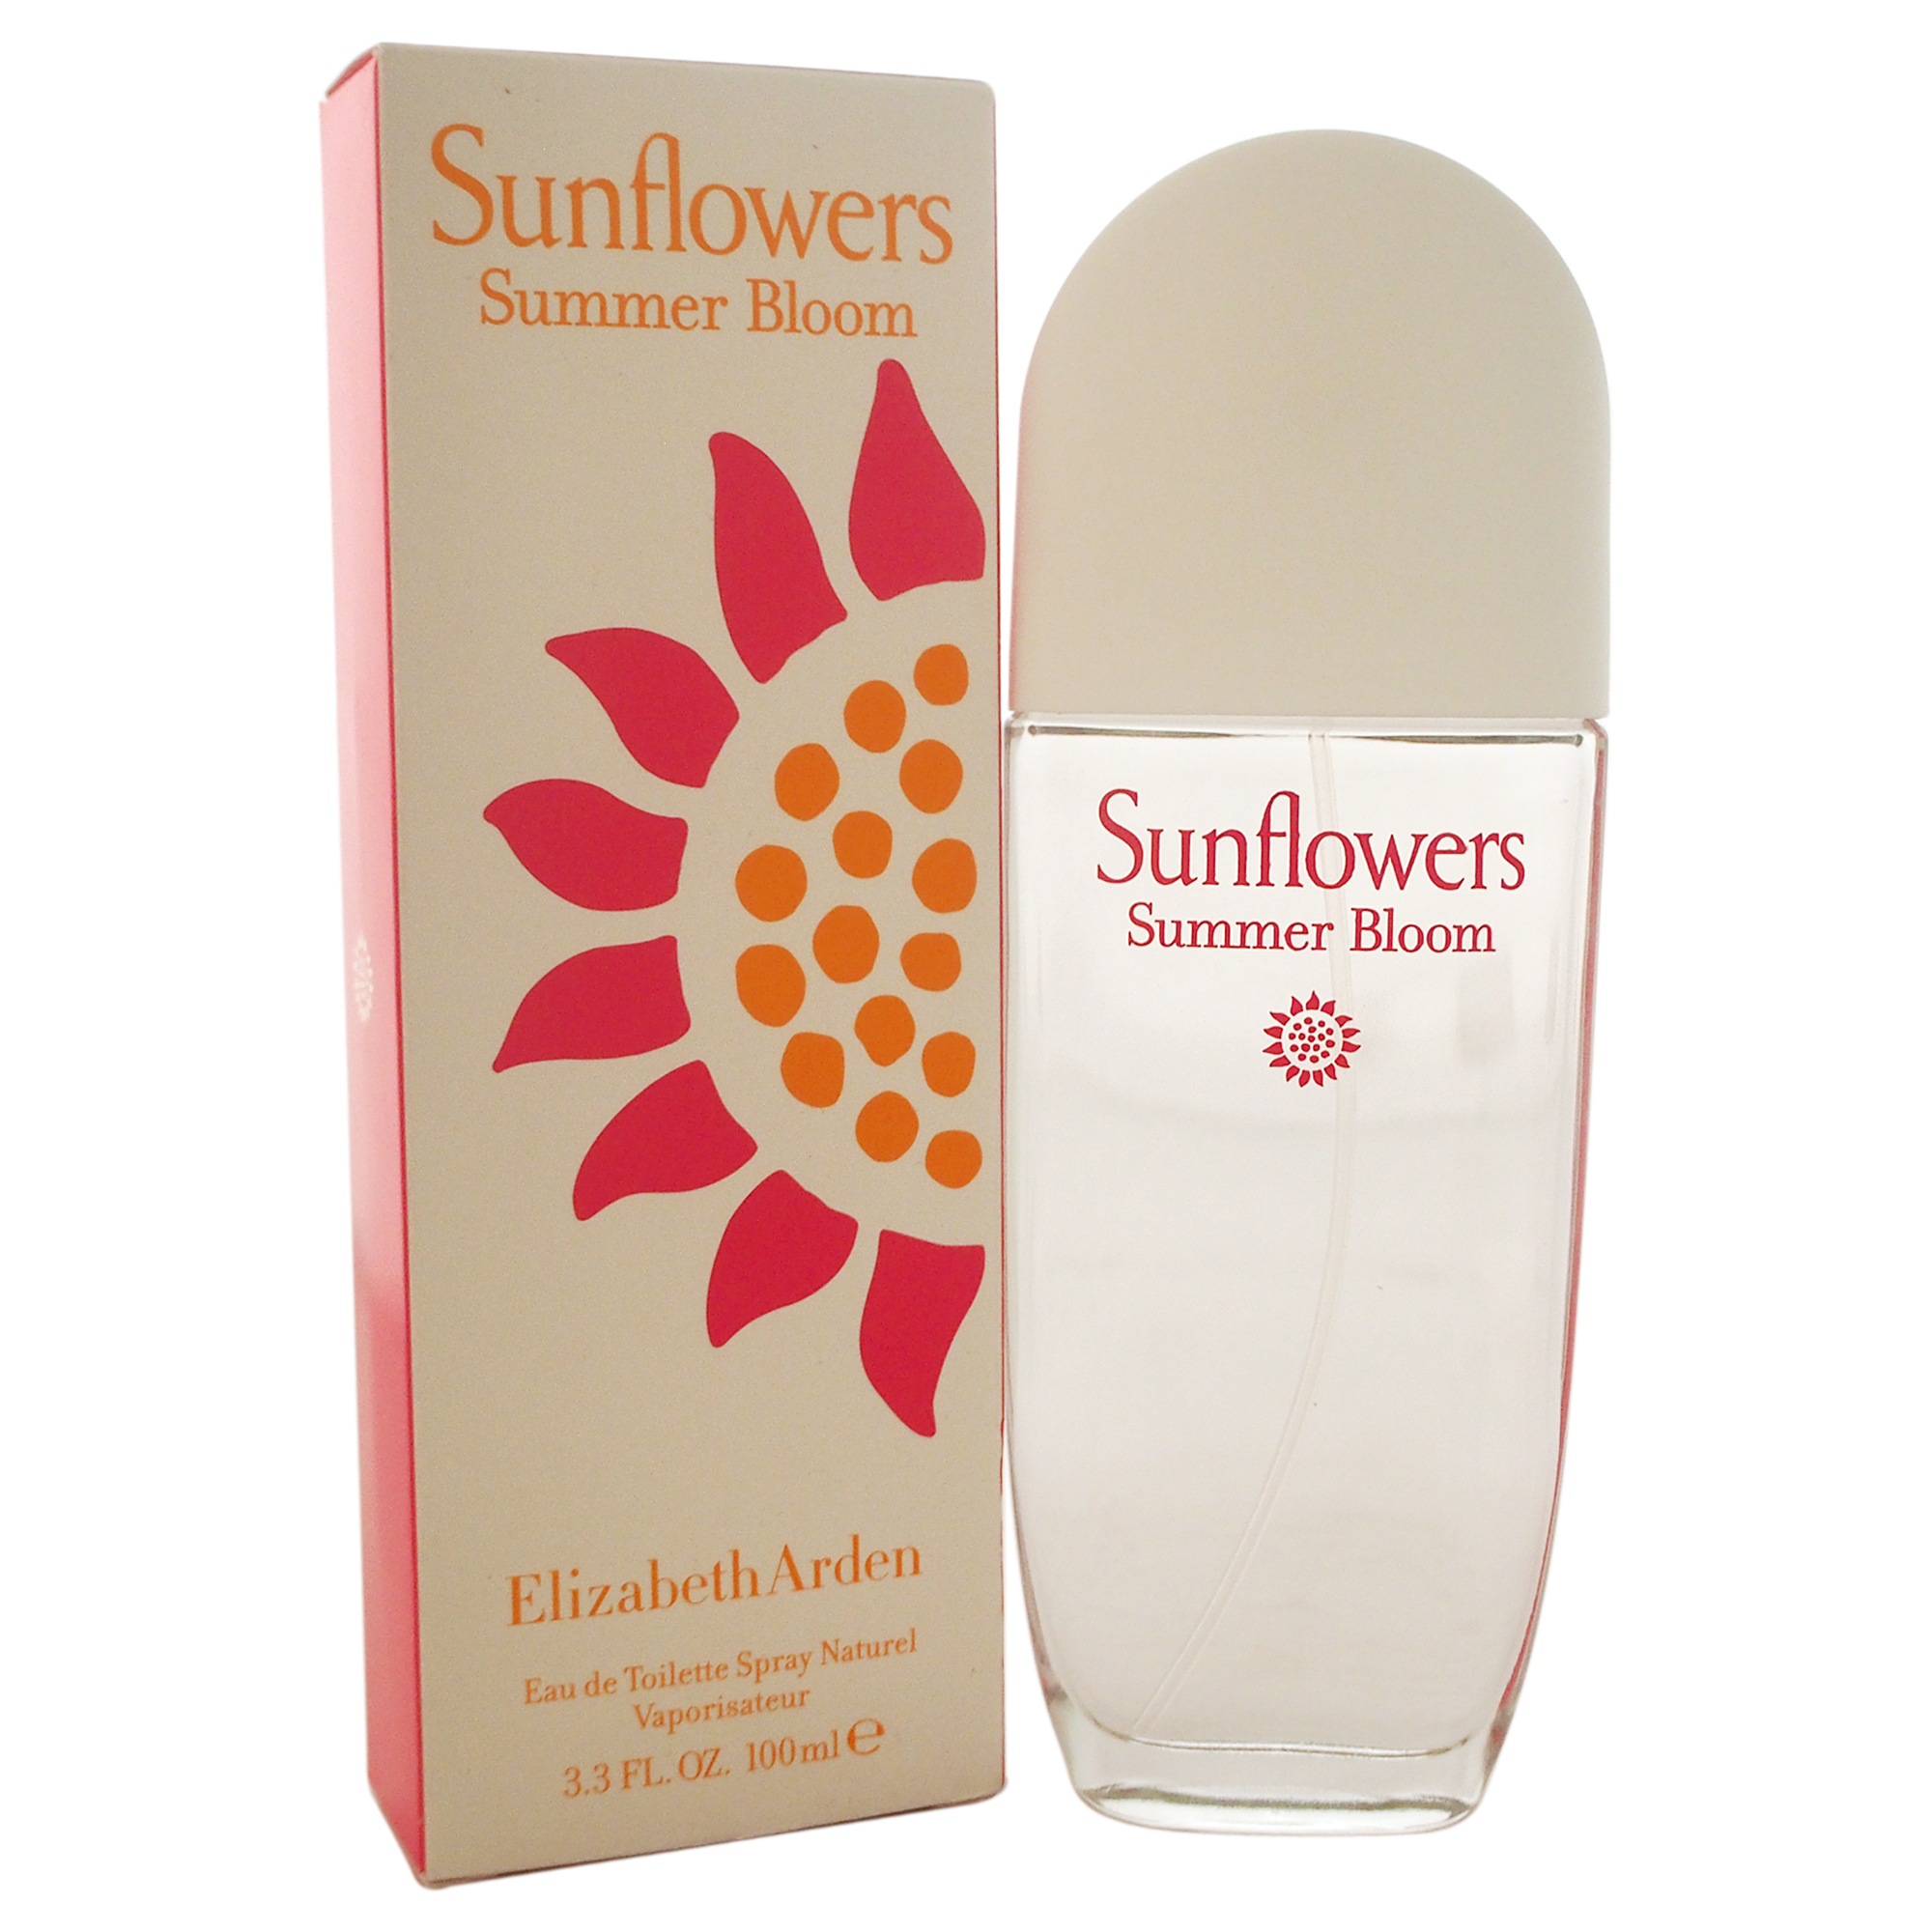 Sunflowers Summer Bloom by Elizabeth Arden for Women - 3.3 oz EDT Spray